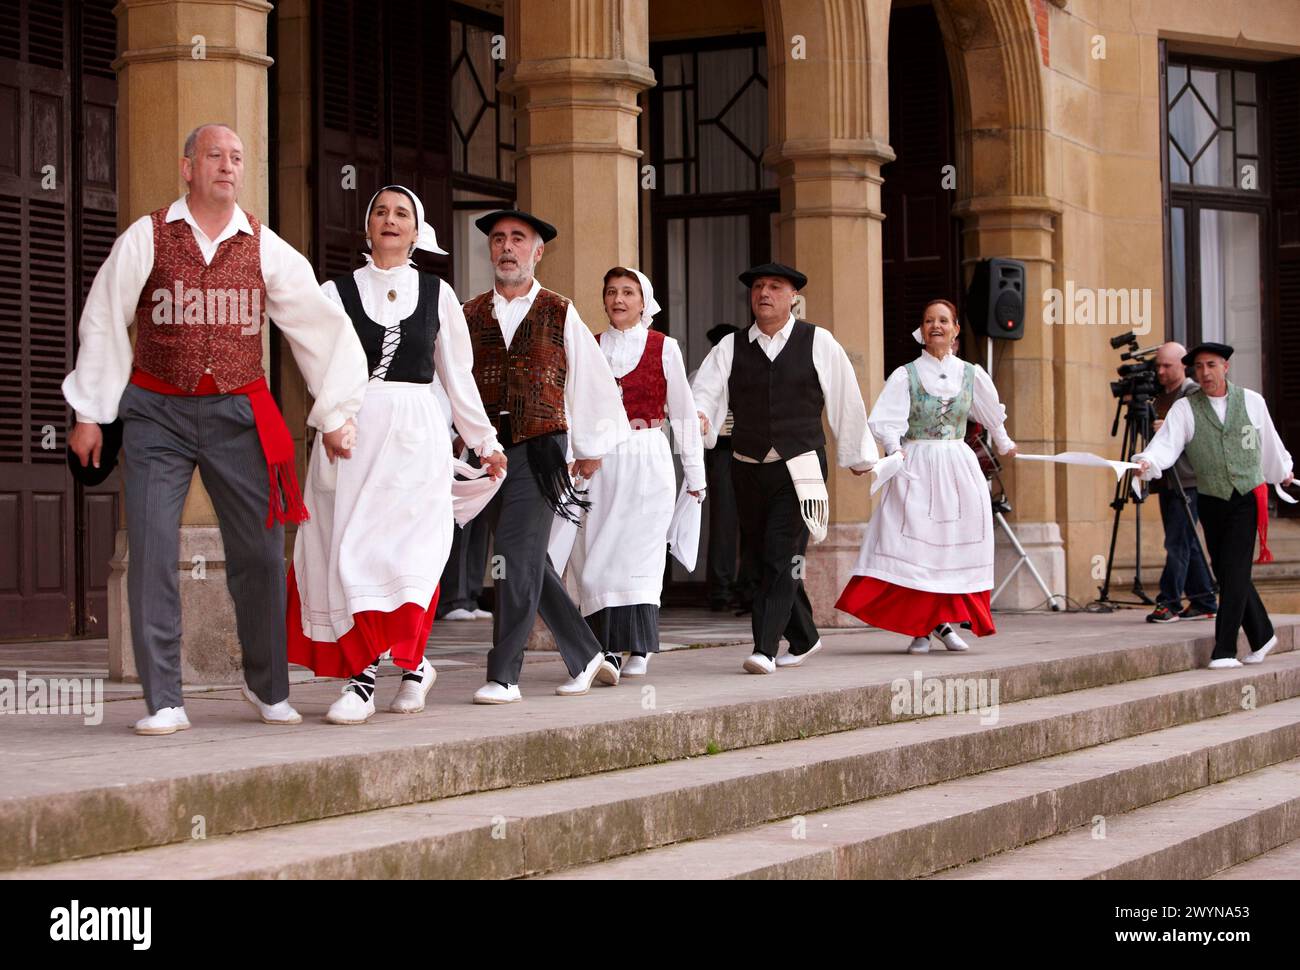 Basque dances, Palacio de Miramar, San Sebastian, Guipuzcoa, Basque Country, Spain. Stock Photo